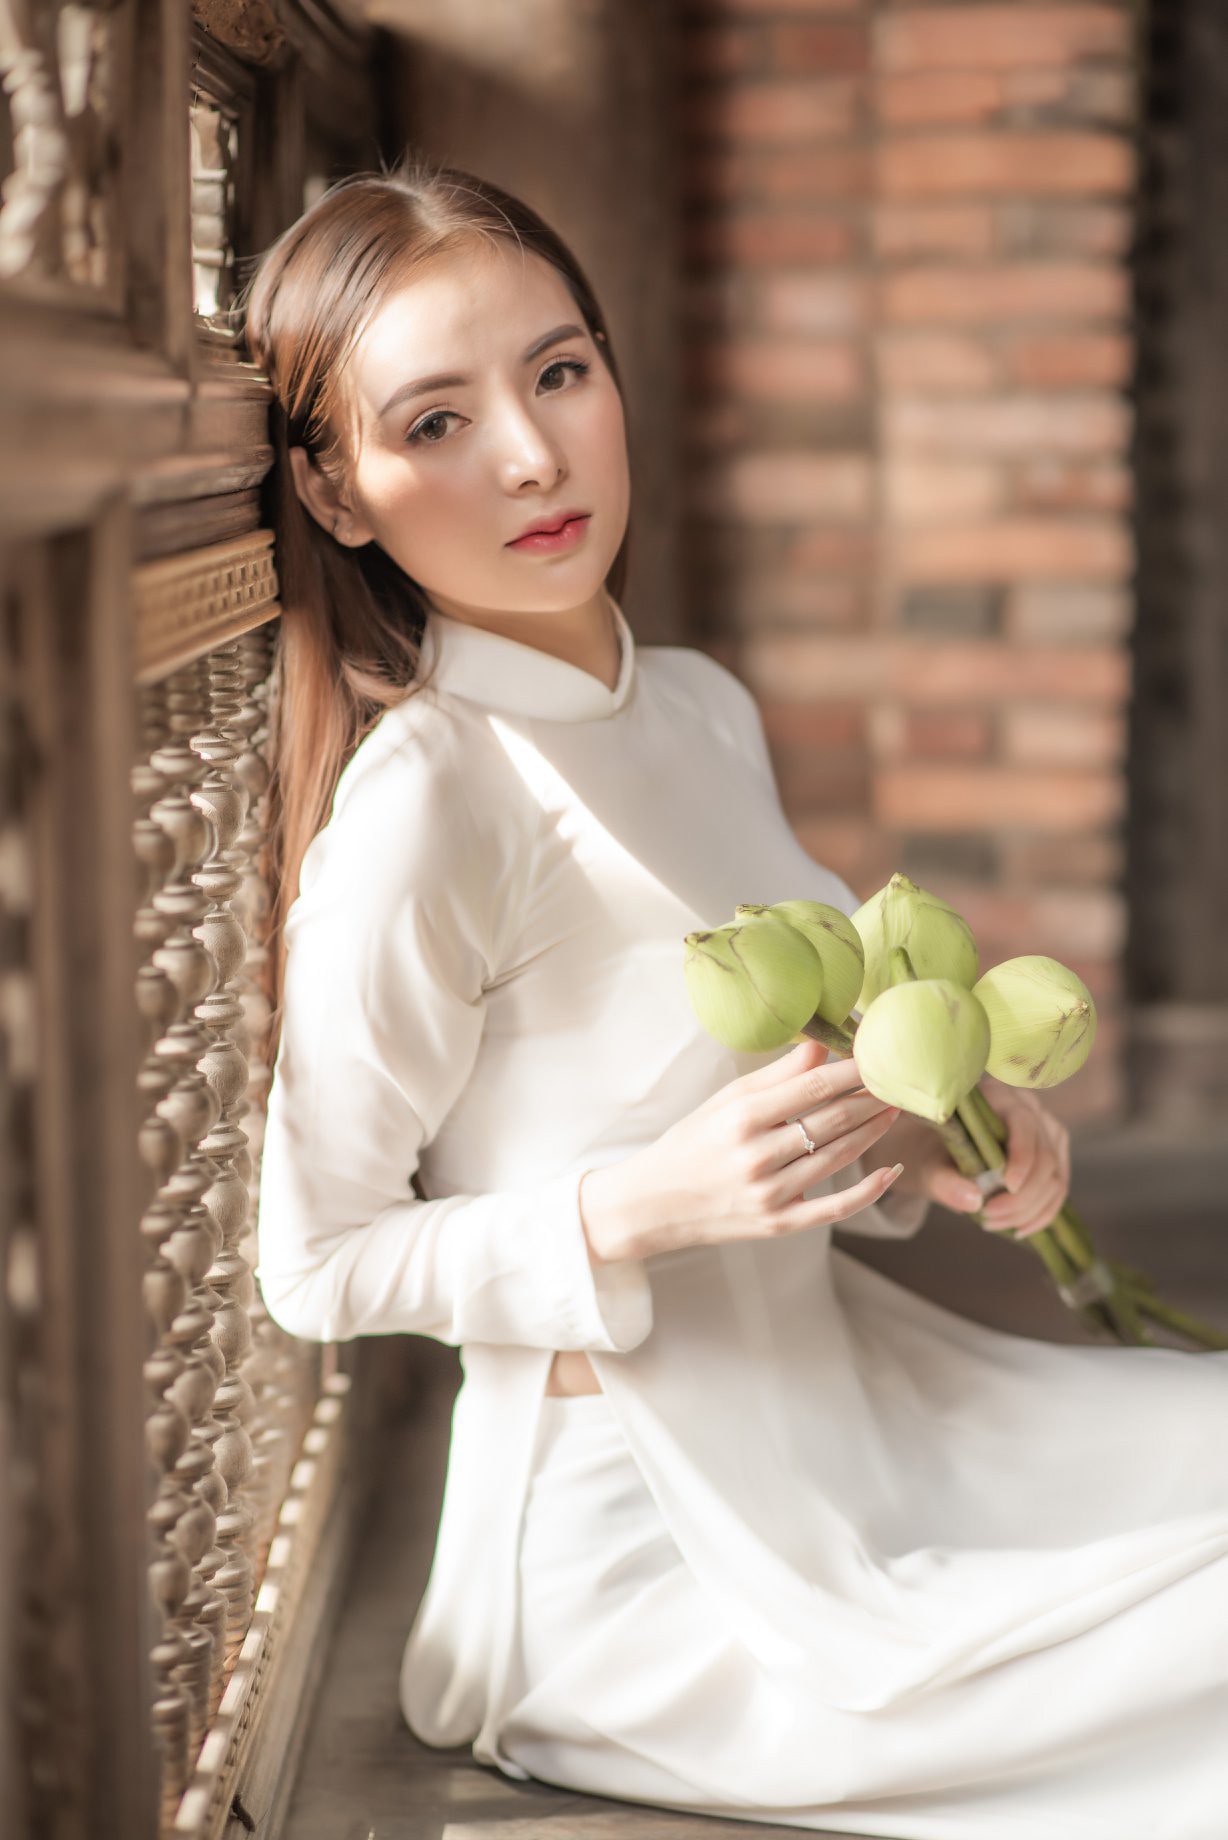 Cùng chiêm ngưỡng bức hình của một cô gái mặc áo dài trắng kiêu sa, thanh lịch và đầy quyến rũ. Áo dài trắng không chỉ được coi là trang phục truyền thống của Việt Nam mà còn là biểu tượng của sự đẹp và tinh tế.